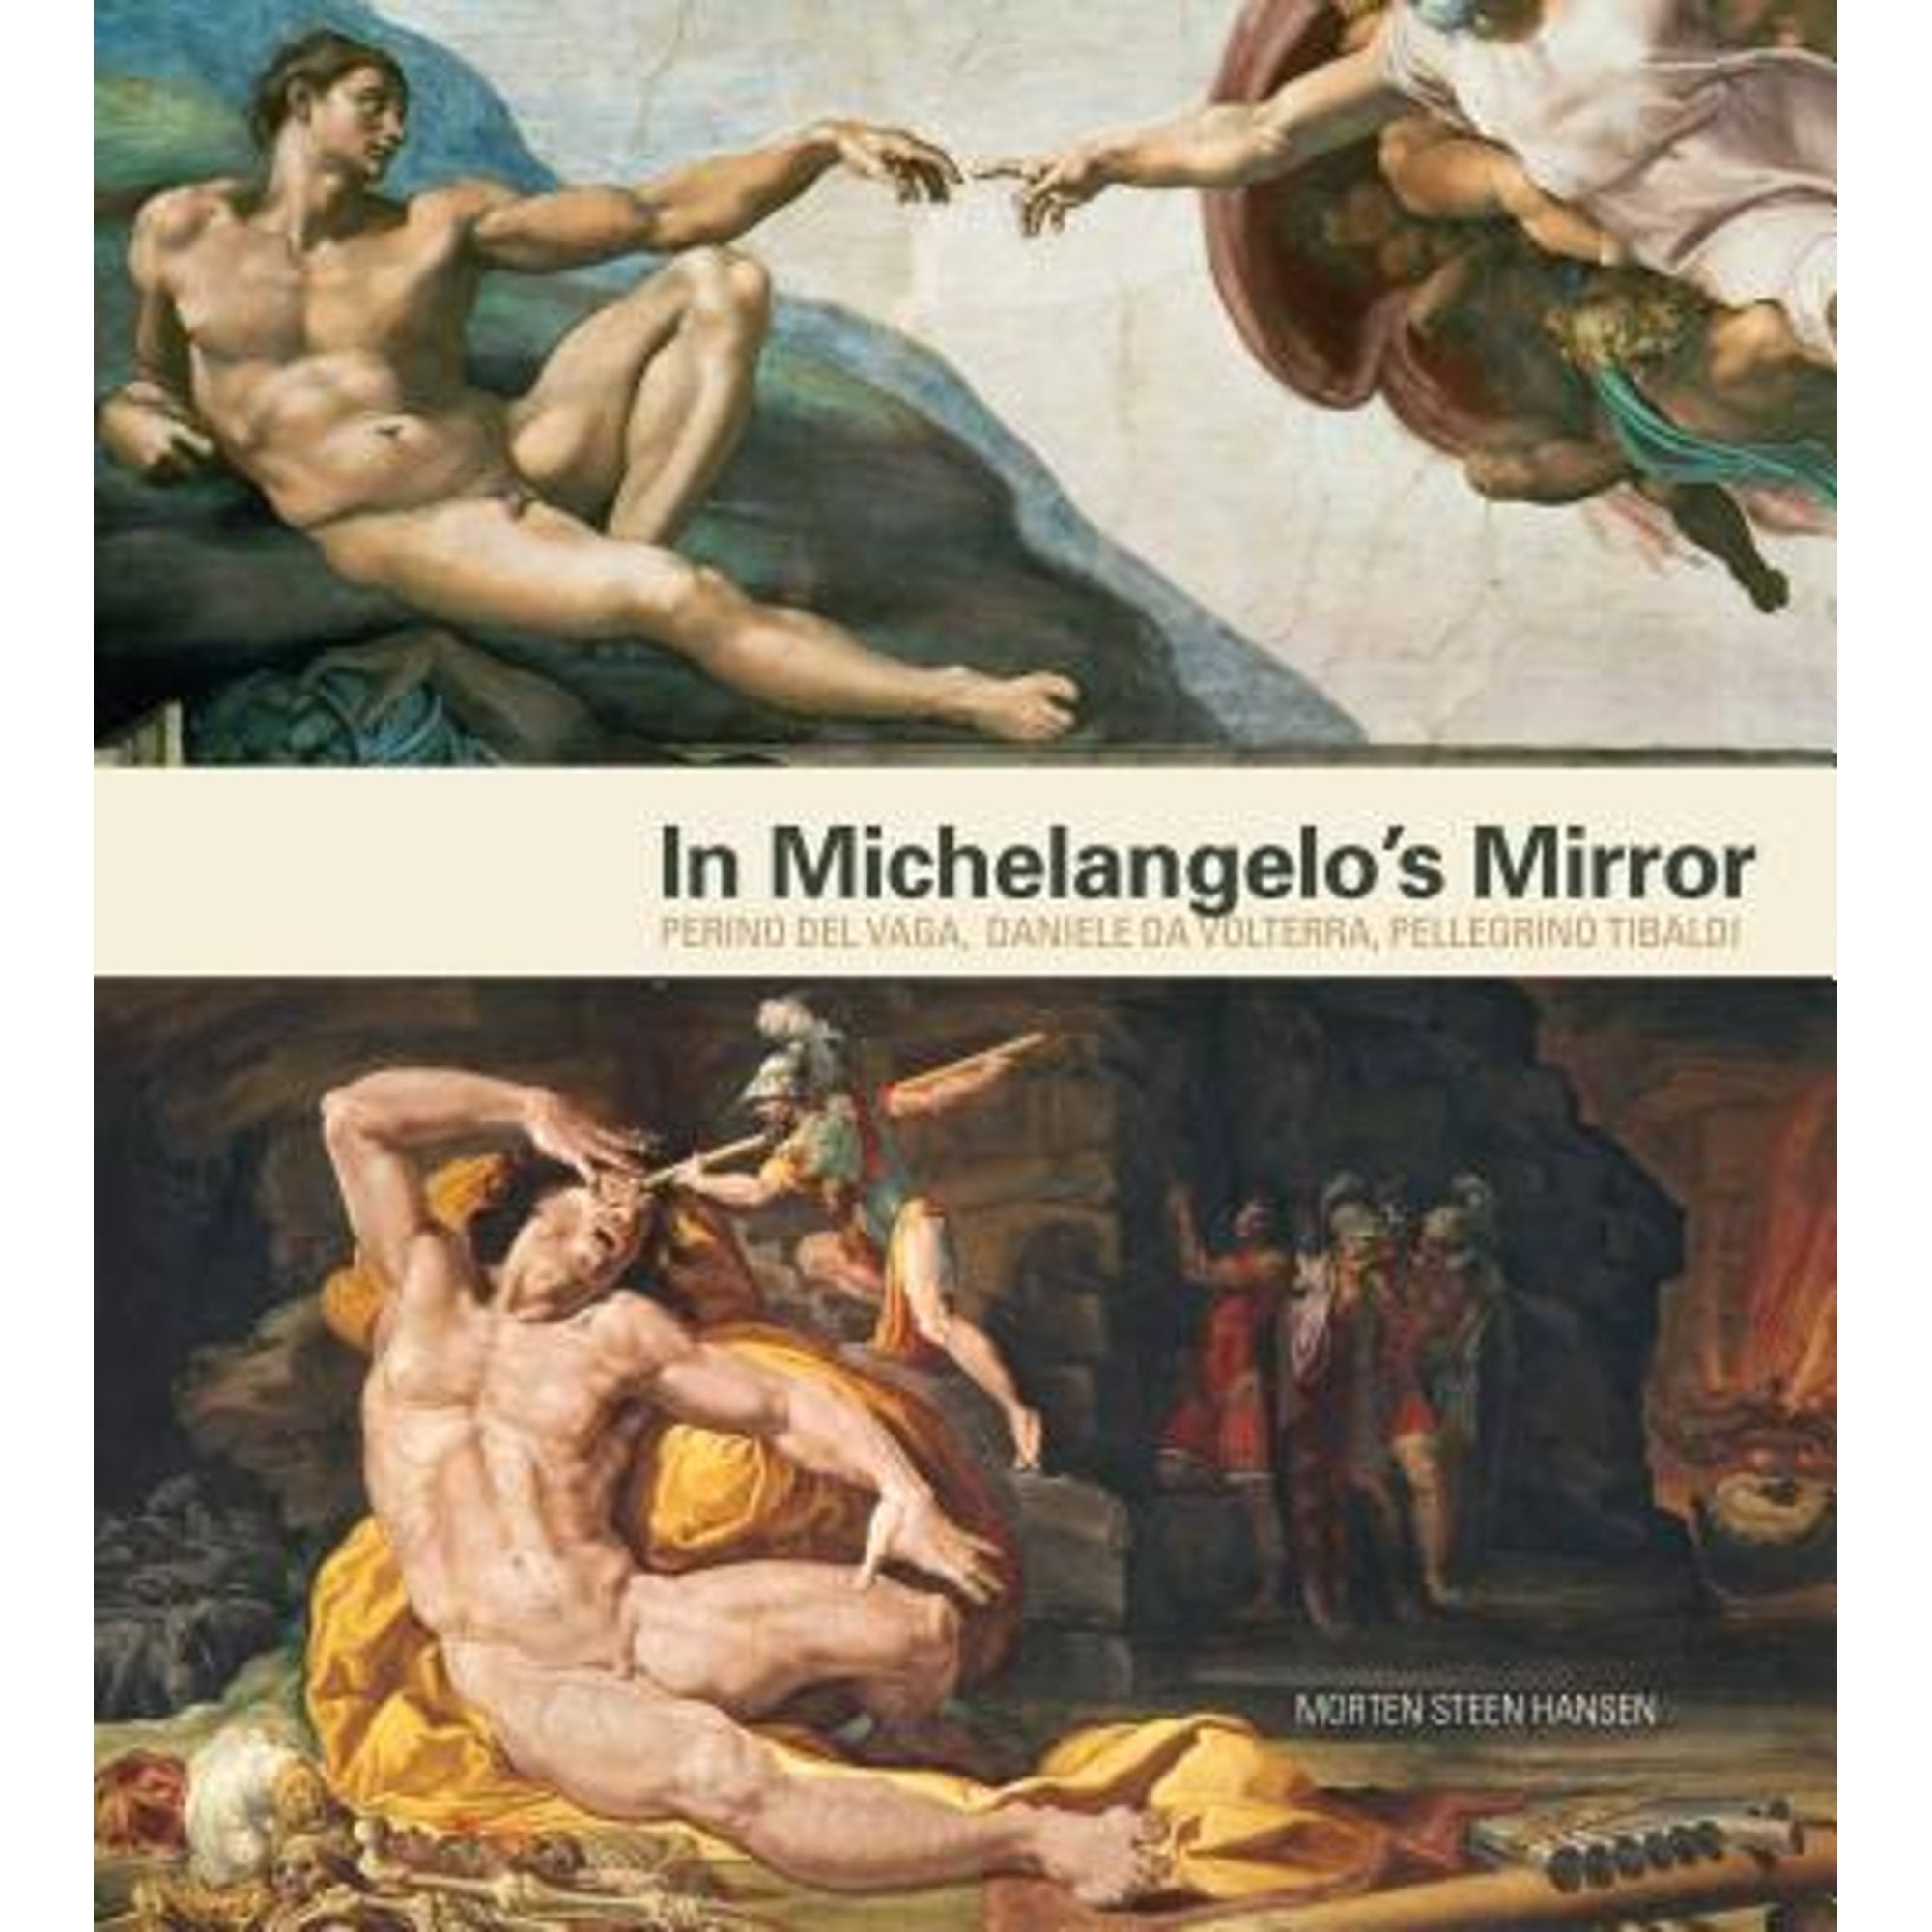 Pre-Owned In Michelangelo's Mirror: Perino del Vaga, Daniele Da Volterra, Pellegrino Tibaldi (Hardcover 9780271056401) by Morten Steen Hansen